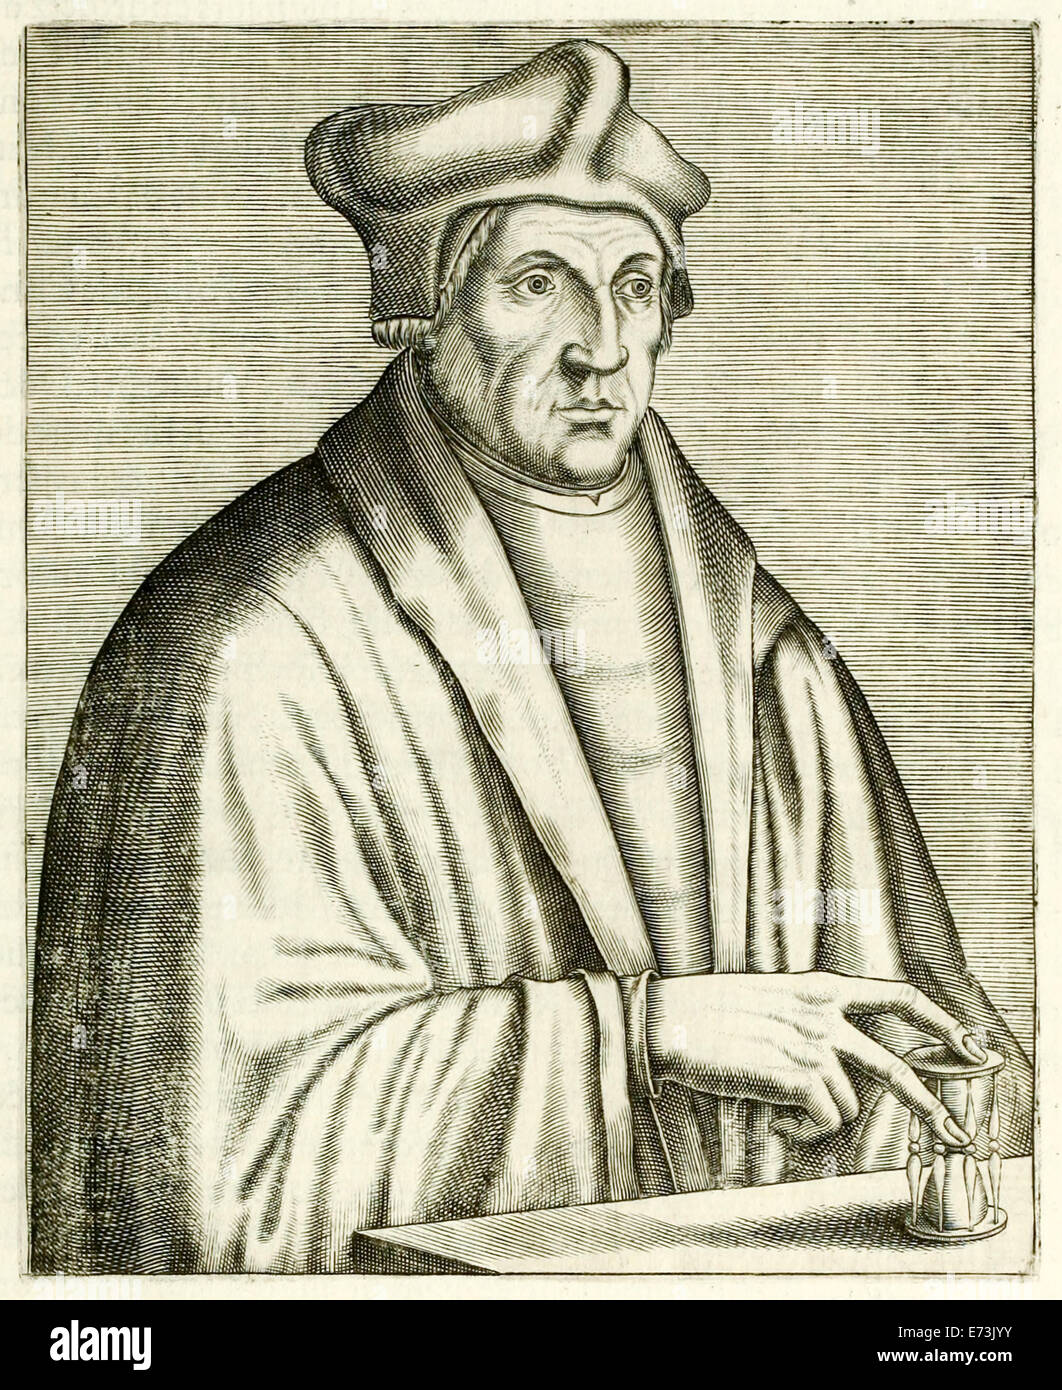 Saint John Fisher (1469-1535) ritratto dal 1594 "veri ritratti...' da André Thévet. Vedere la descrizione per maggiori informazioni. Foto Stock